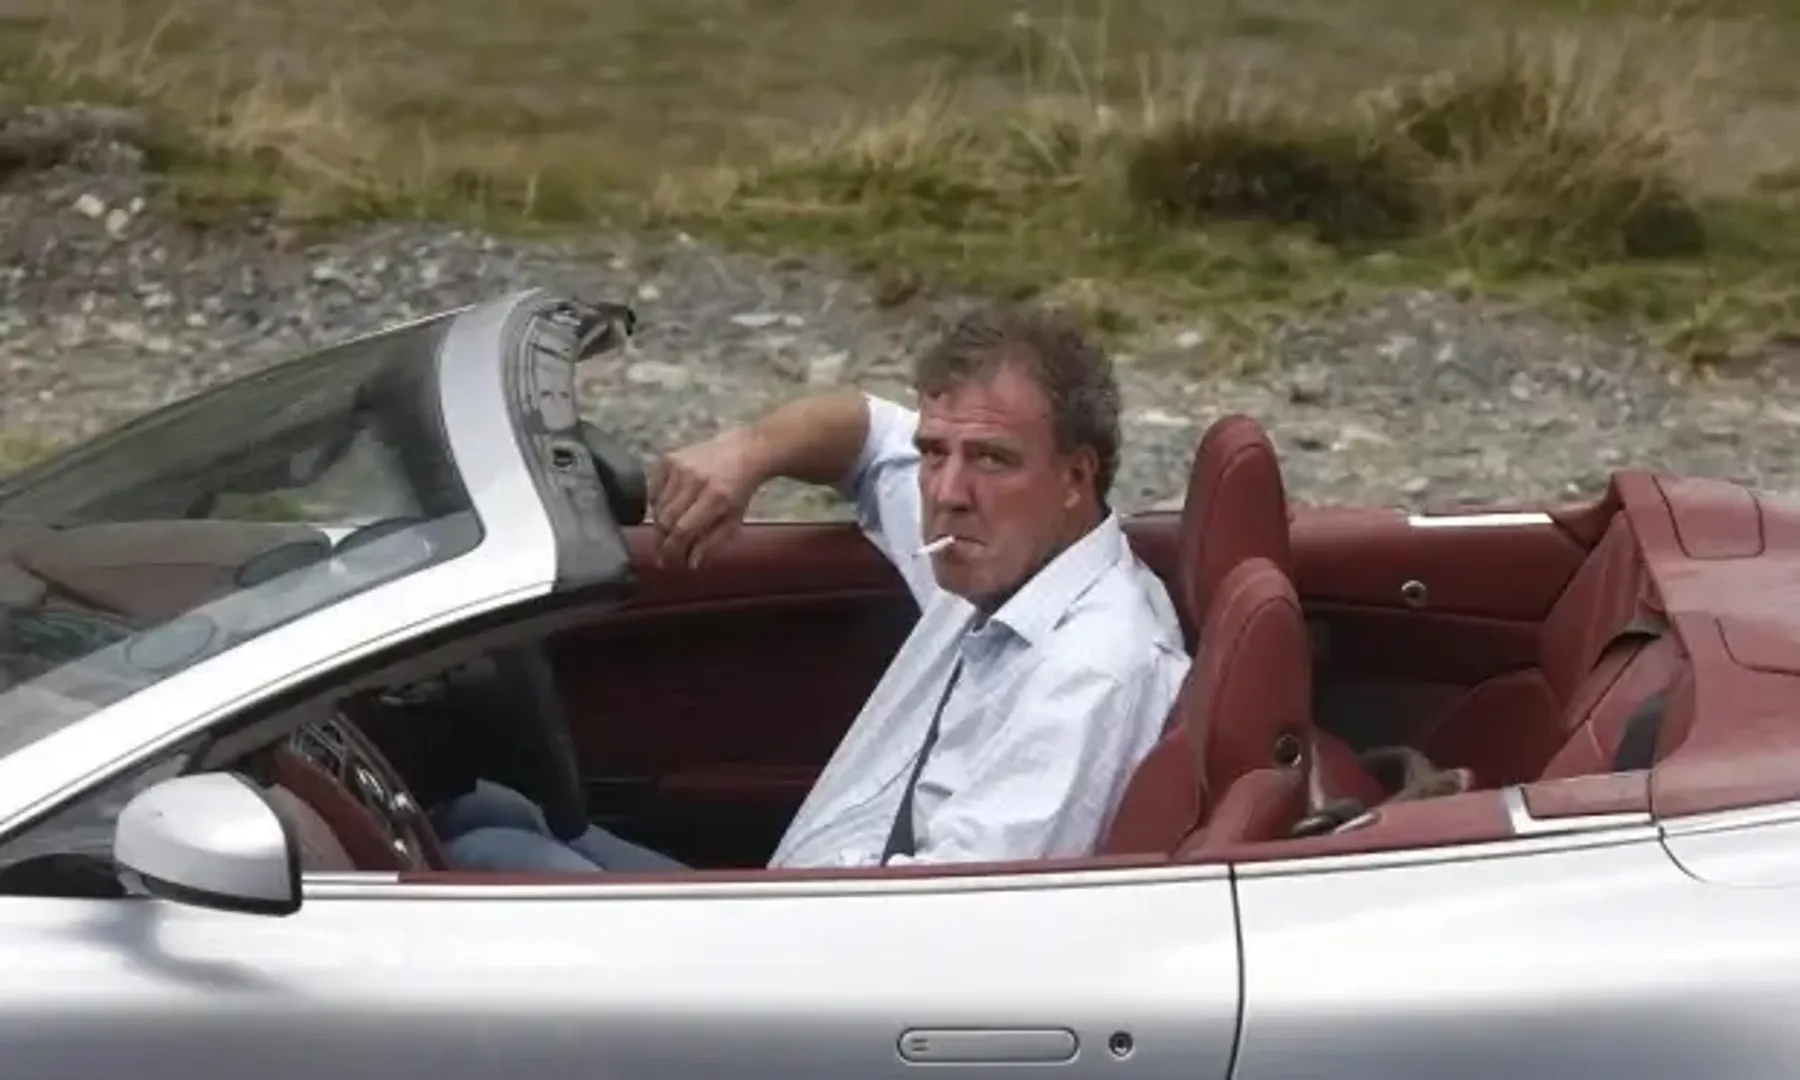 Jeremy Clarkson in a car smoking